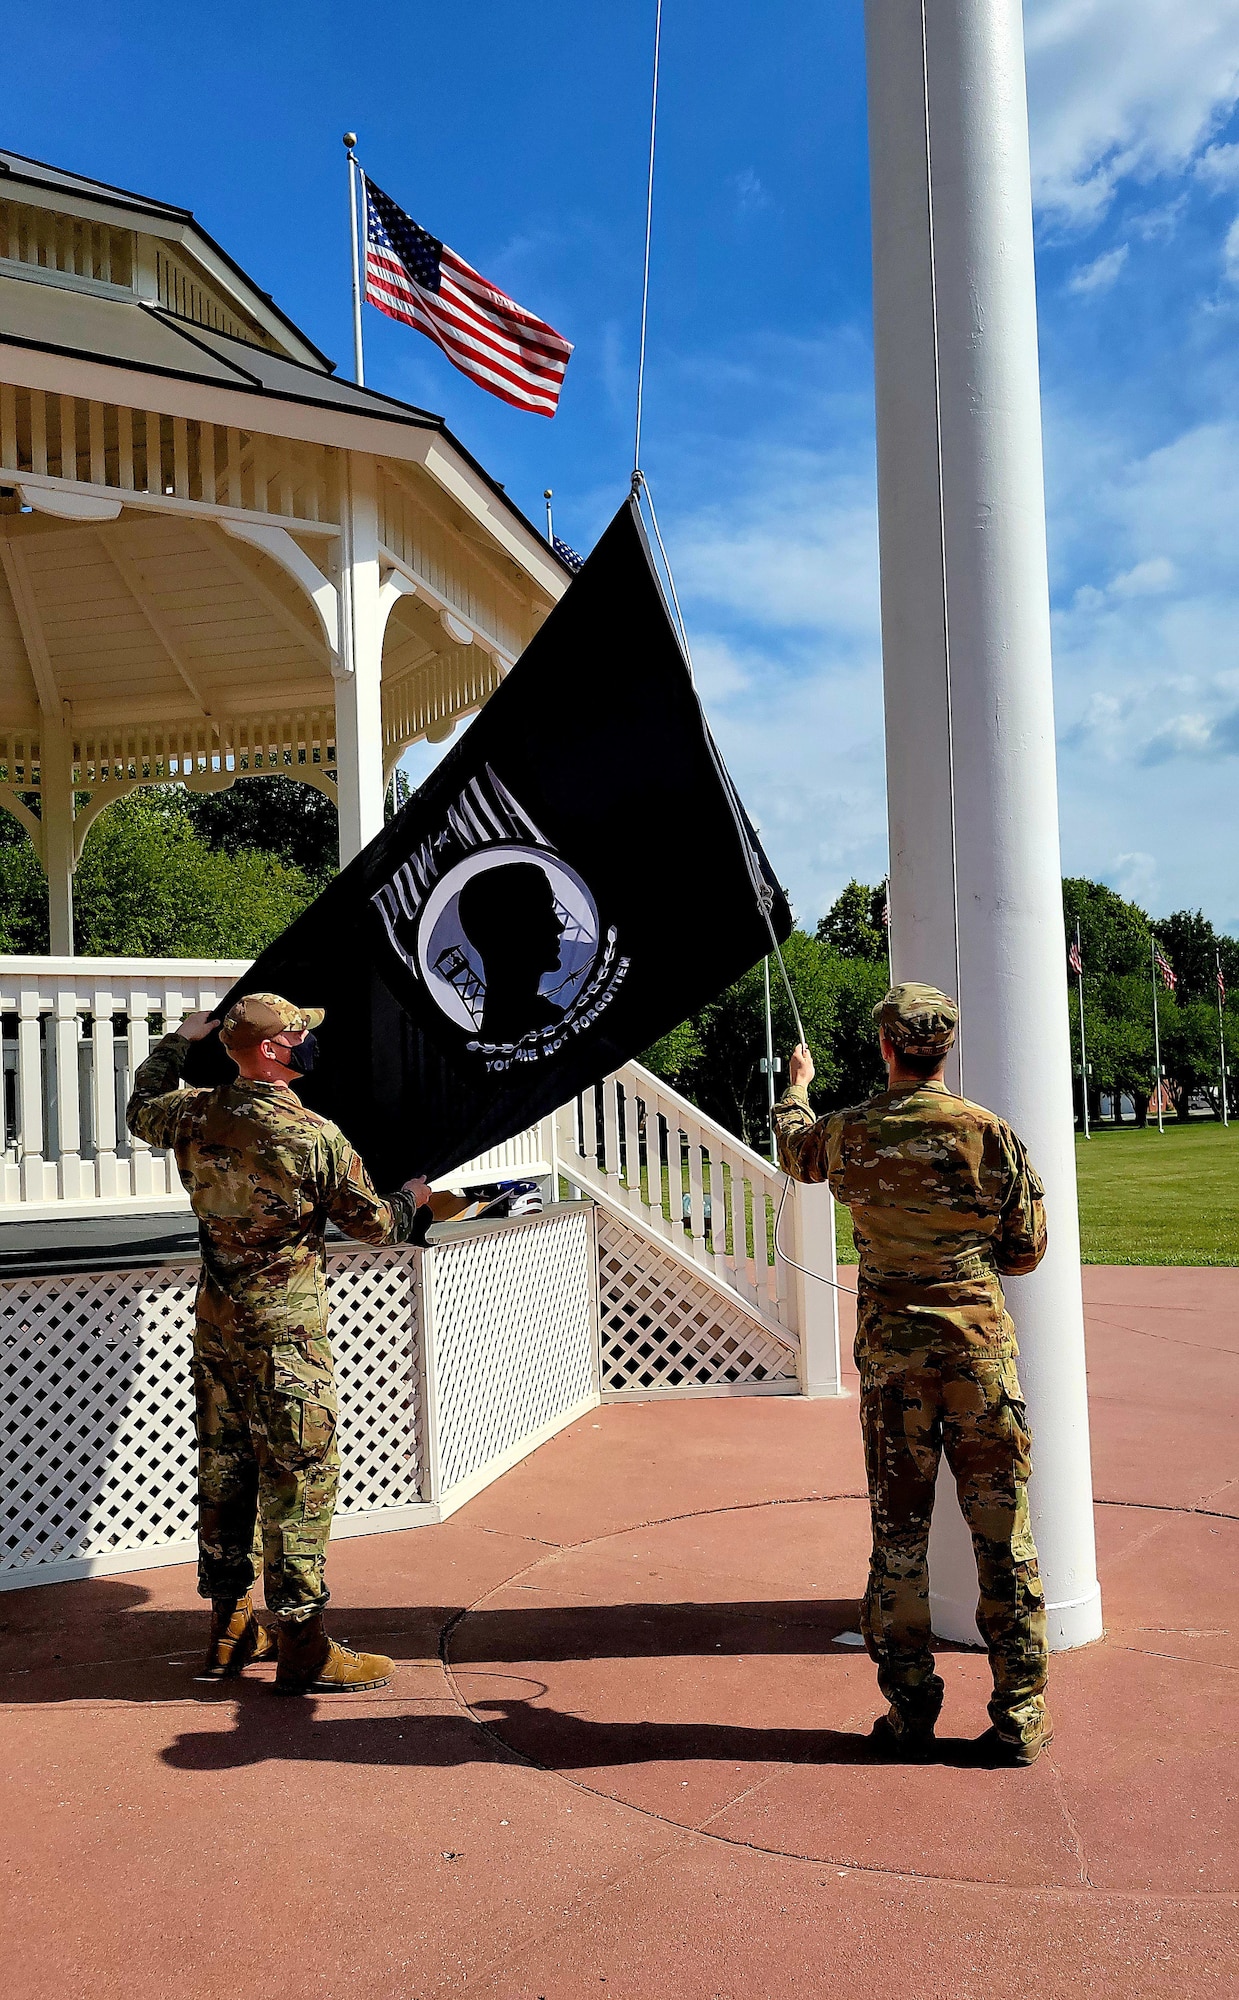 Two Airmen raising POW/MIA flag on flag pole